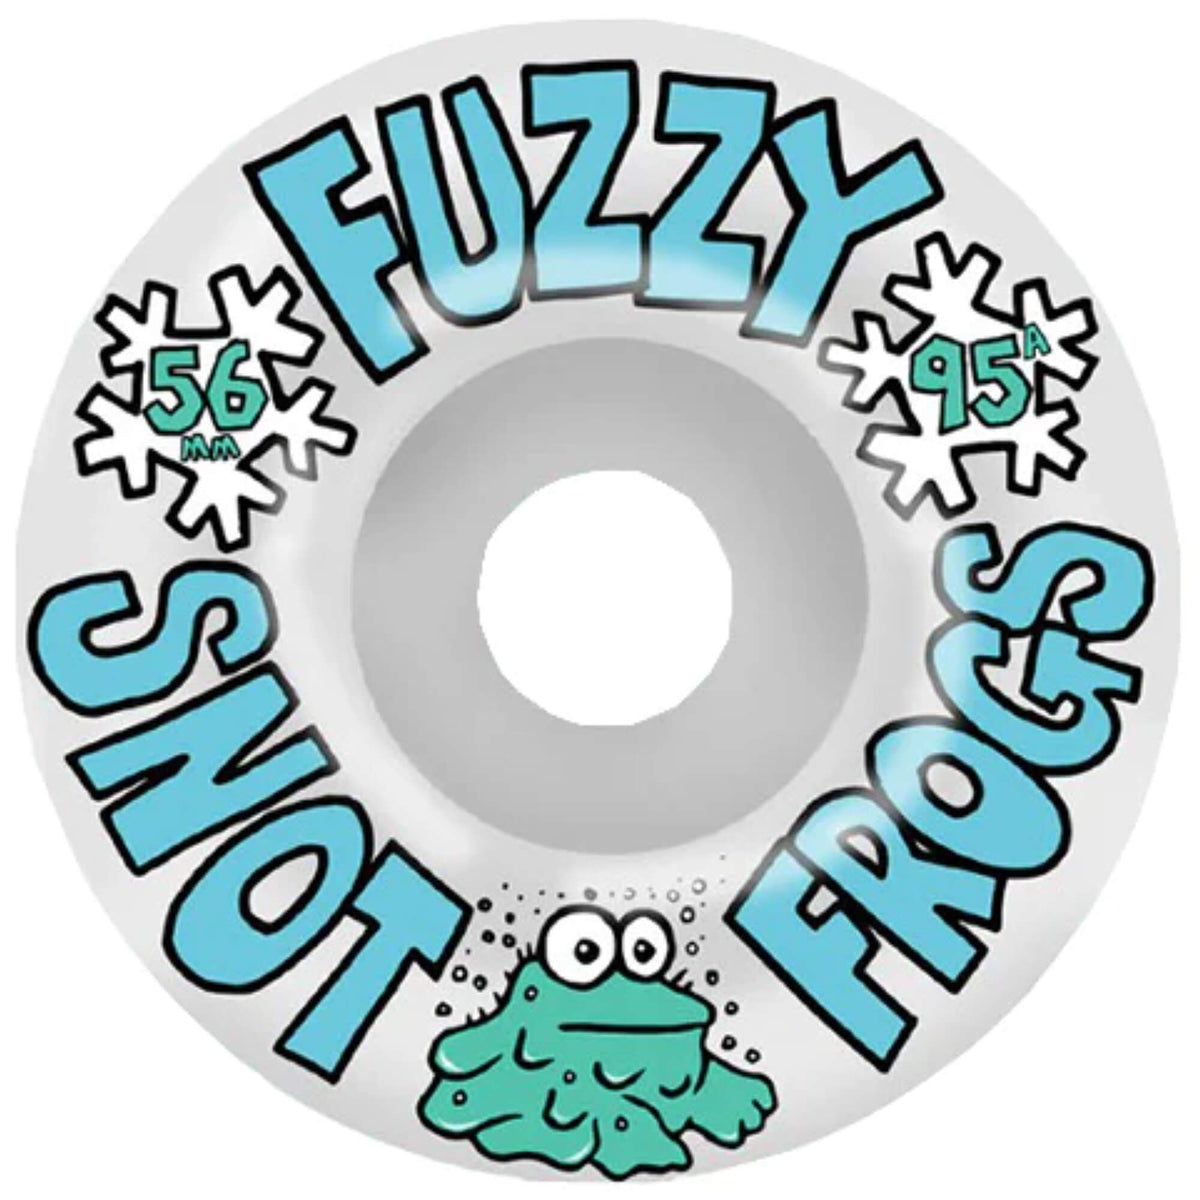 Snot Fuzzy Frogs Skateboard Wheels 56mm 95A